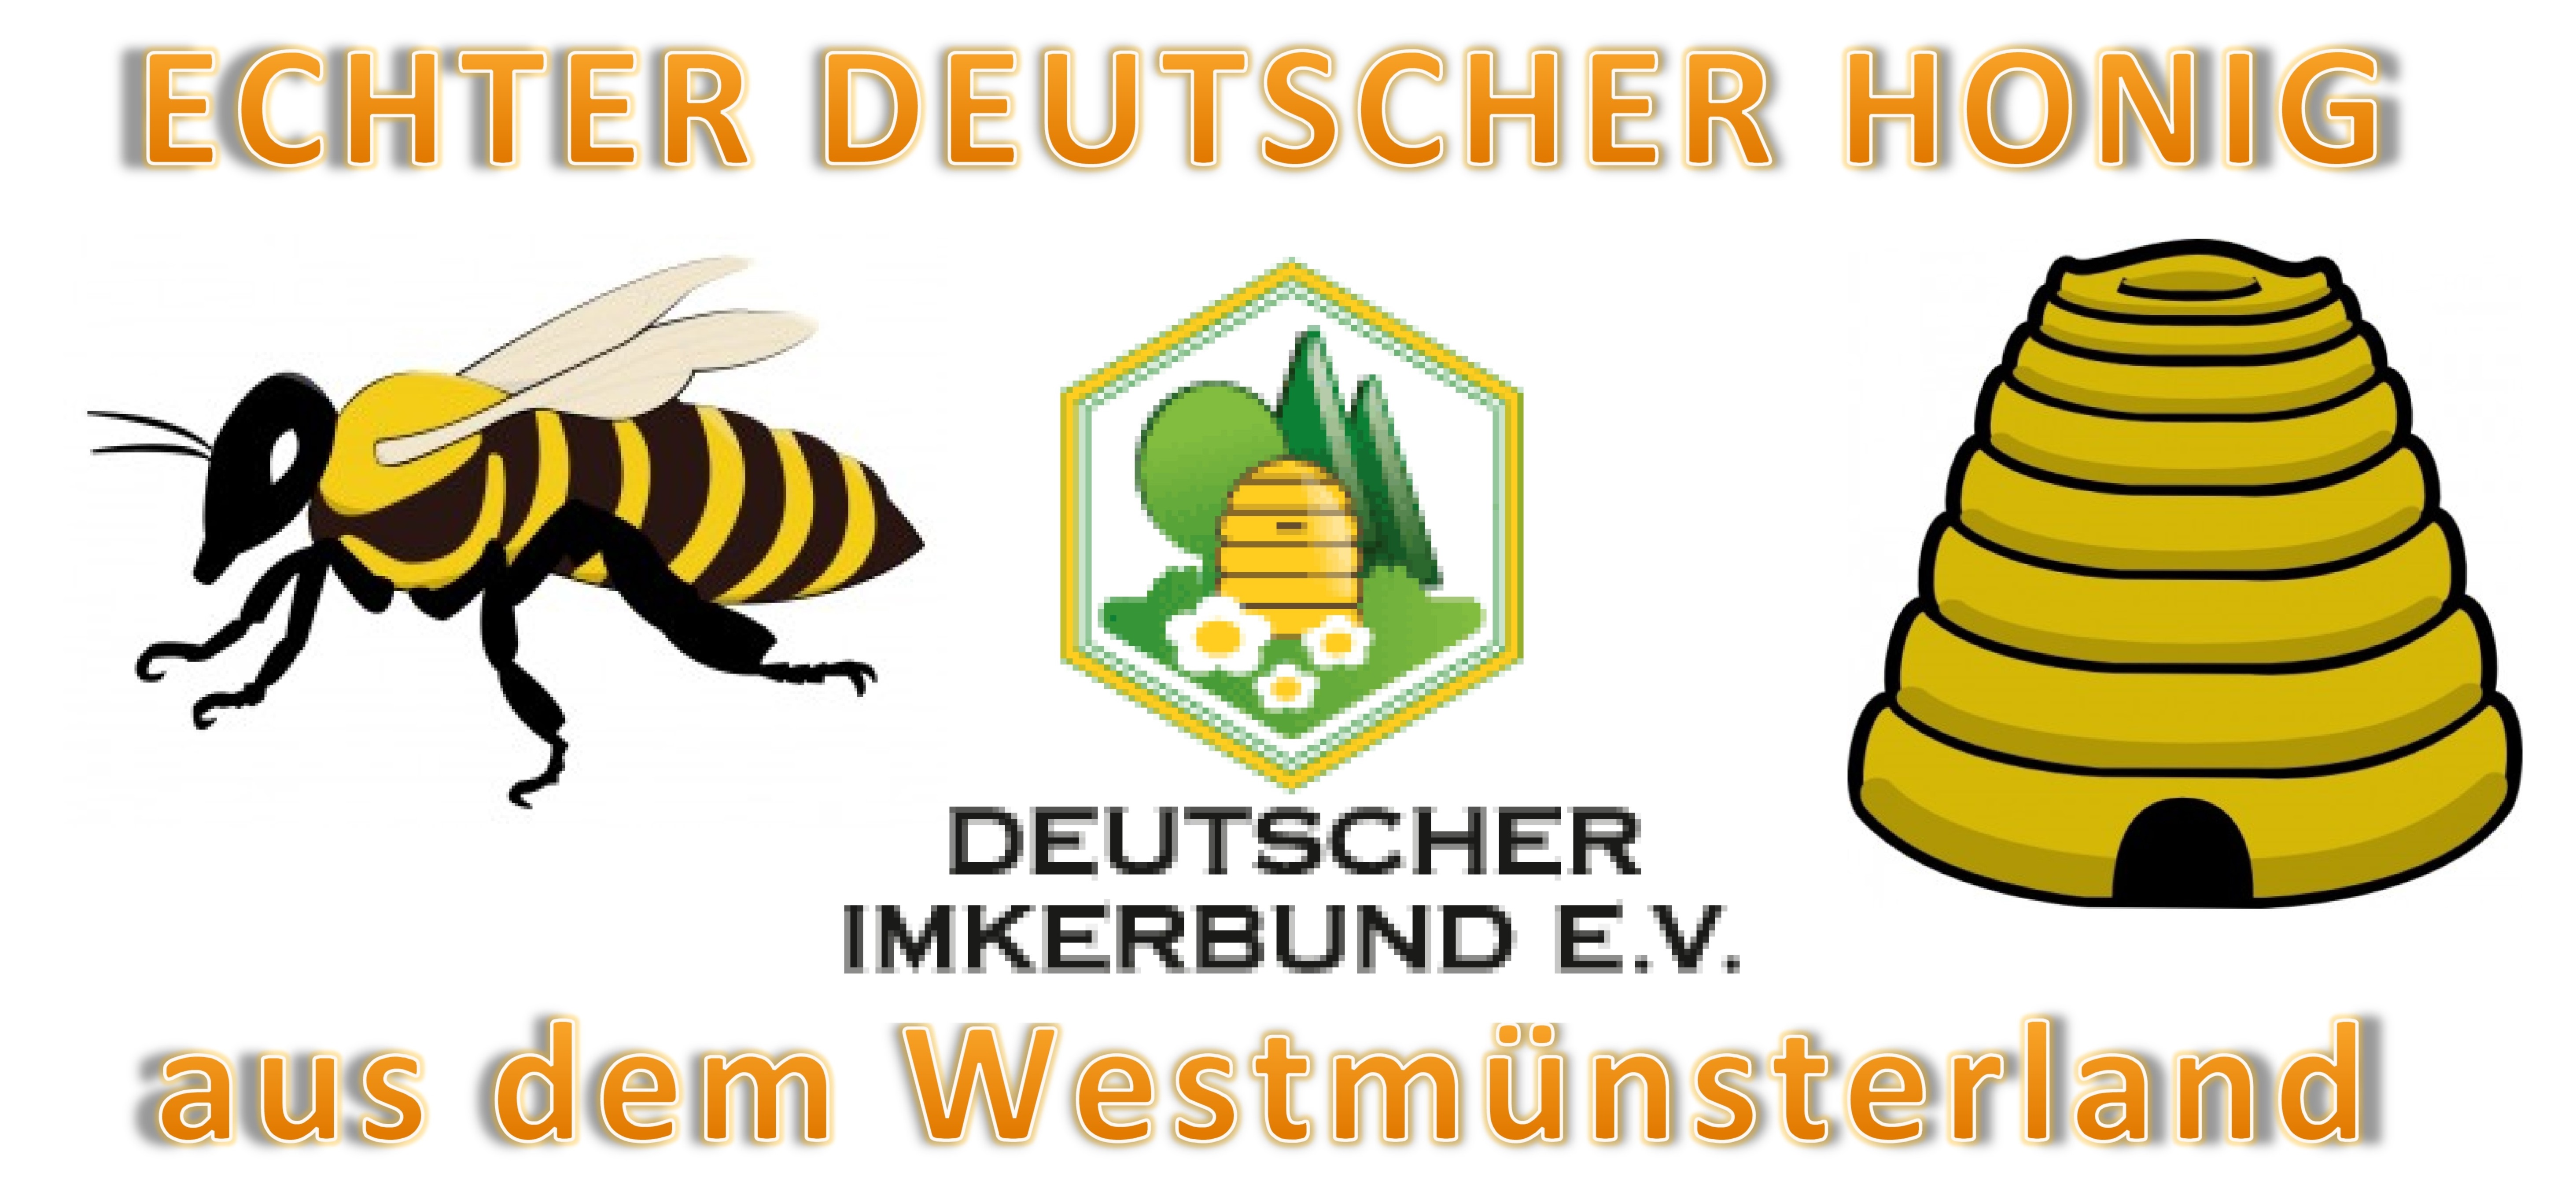 Echter Deutscher Honig aus dem Westmünsterland-Leinwand 4_1